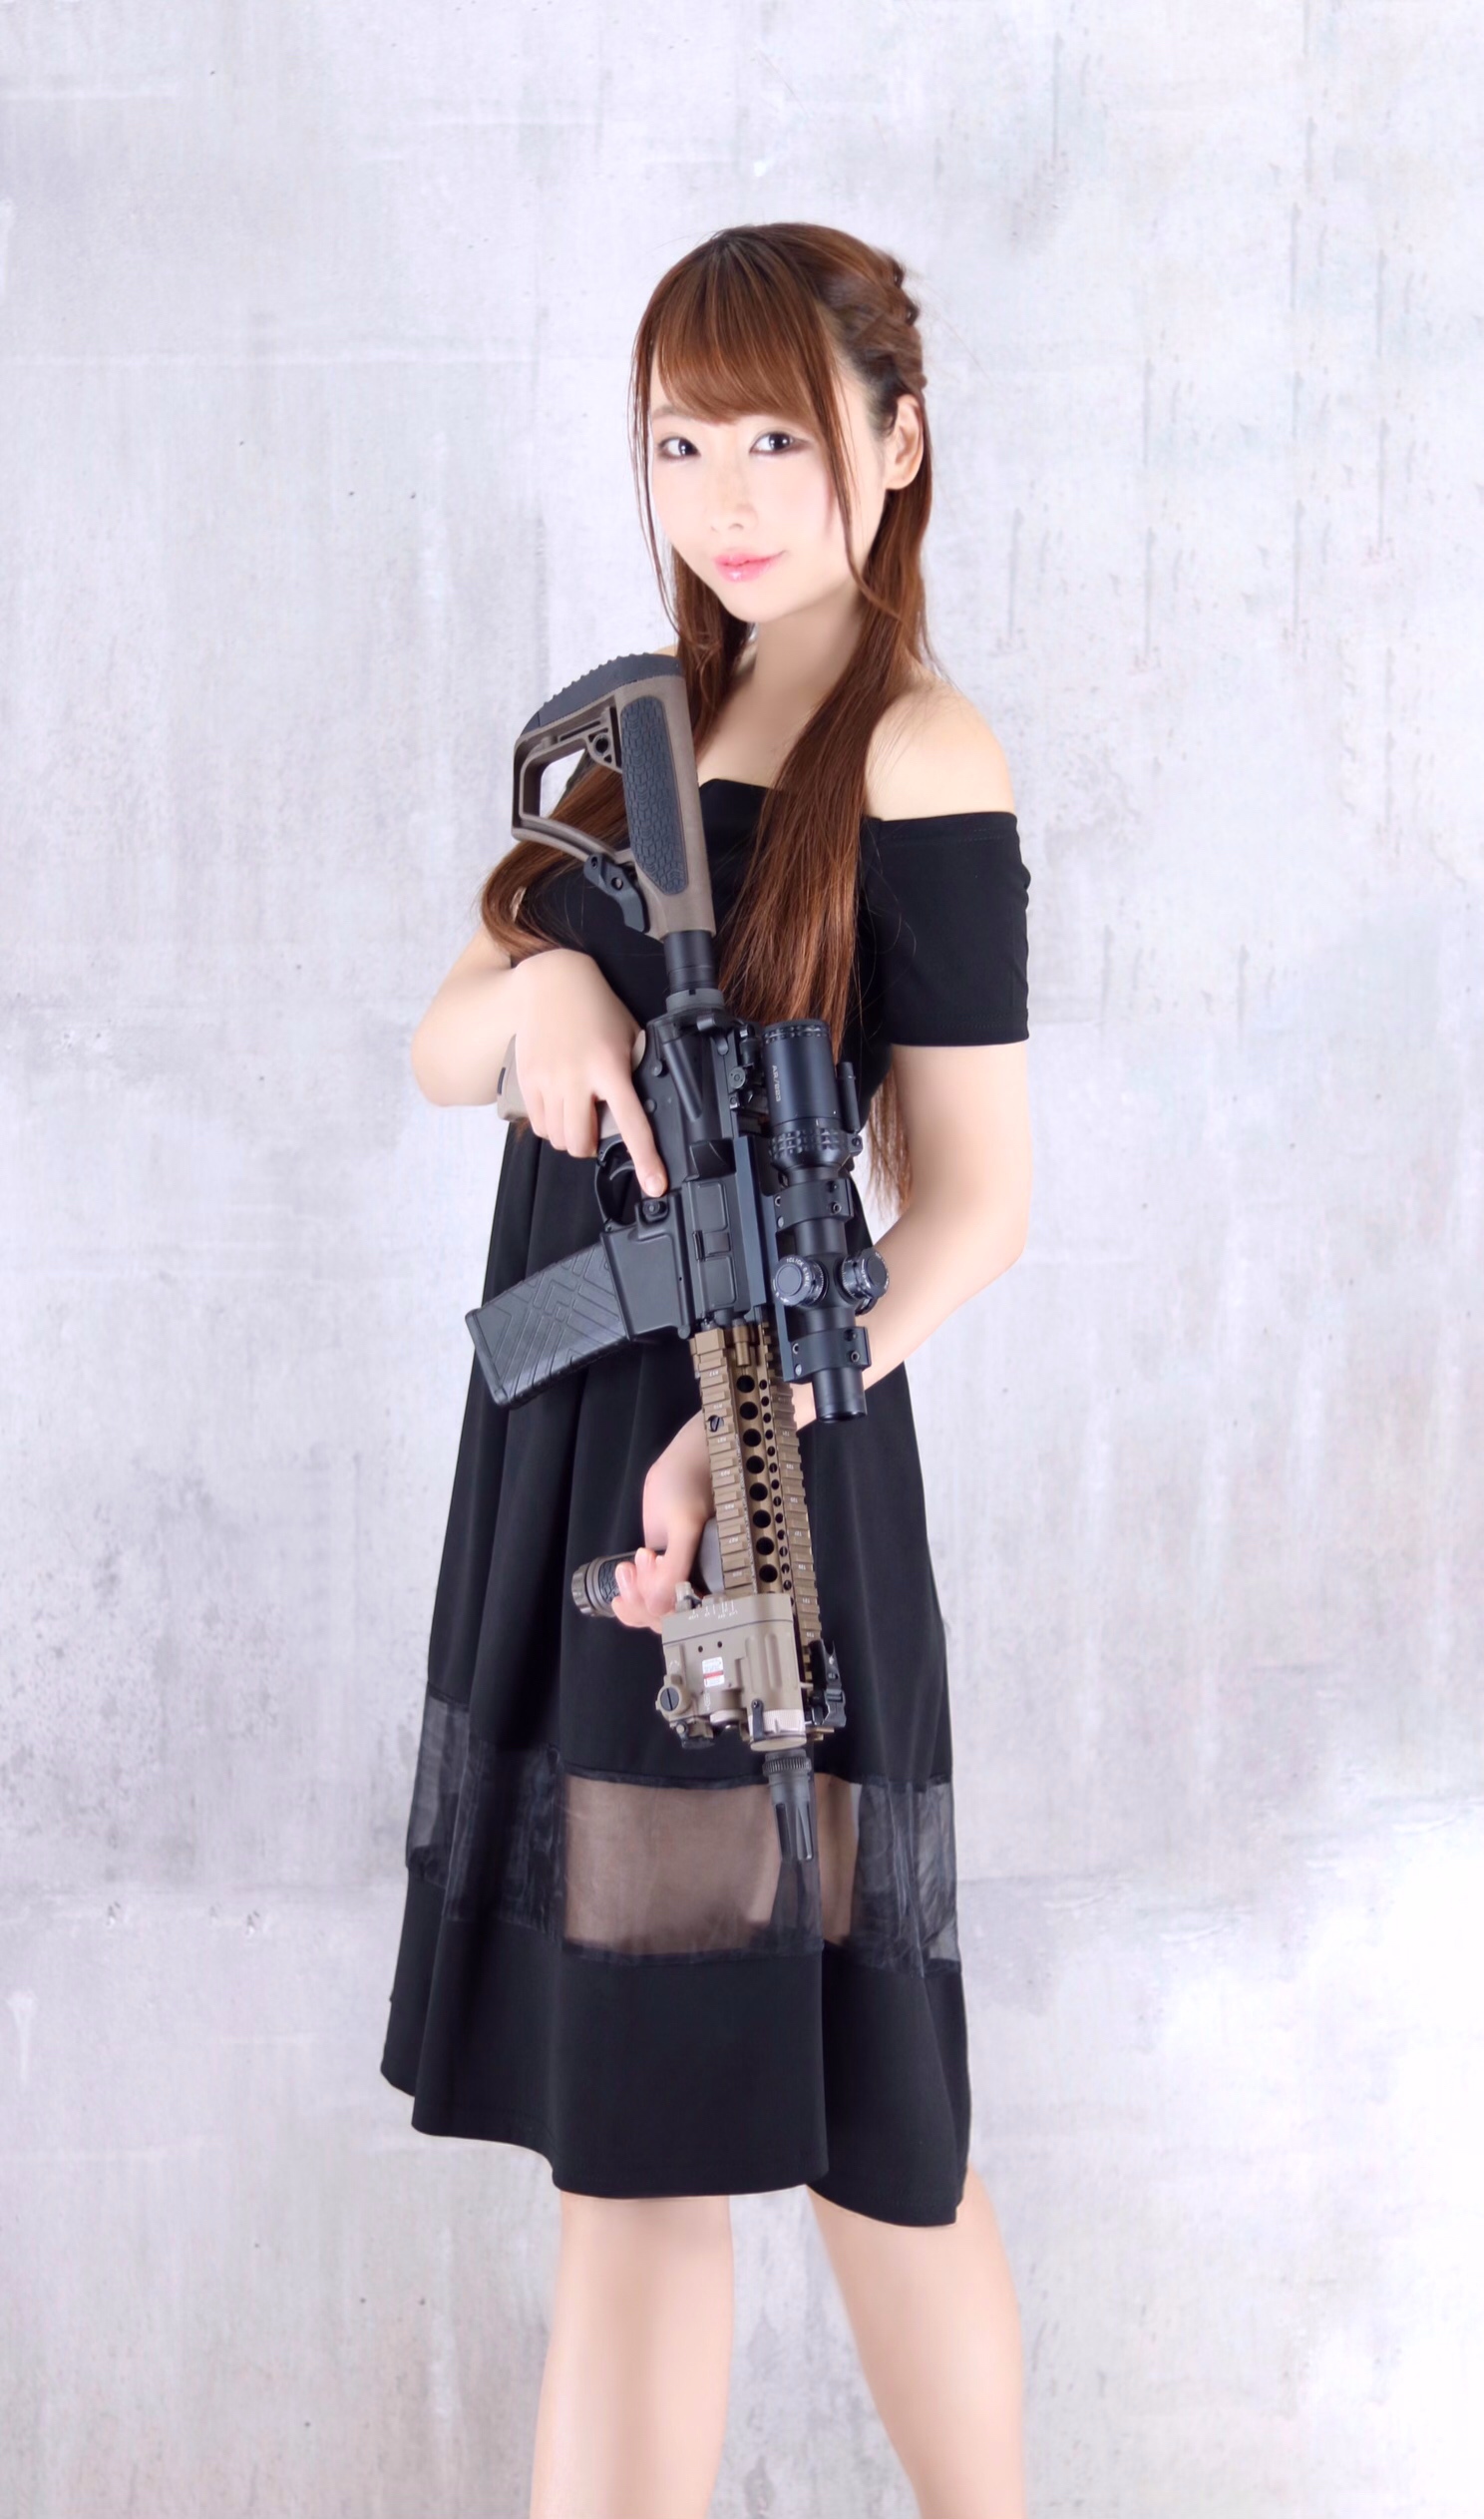 ☆ CYBERGUN/ARTS AIRSOFT Colt M4 MK18MOD1 ATW トレポン ✖︎ dress ☆